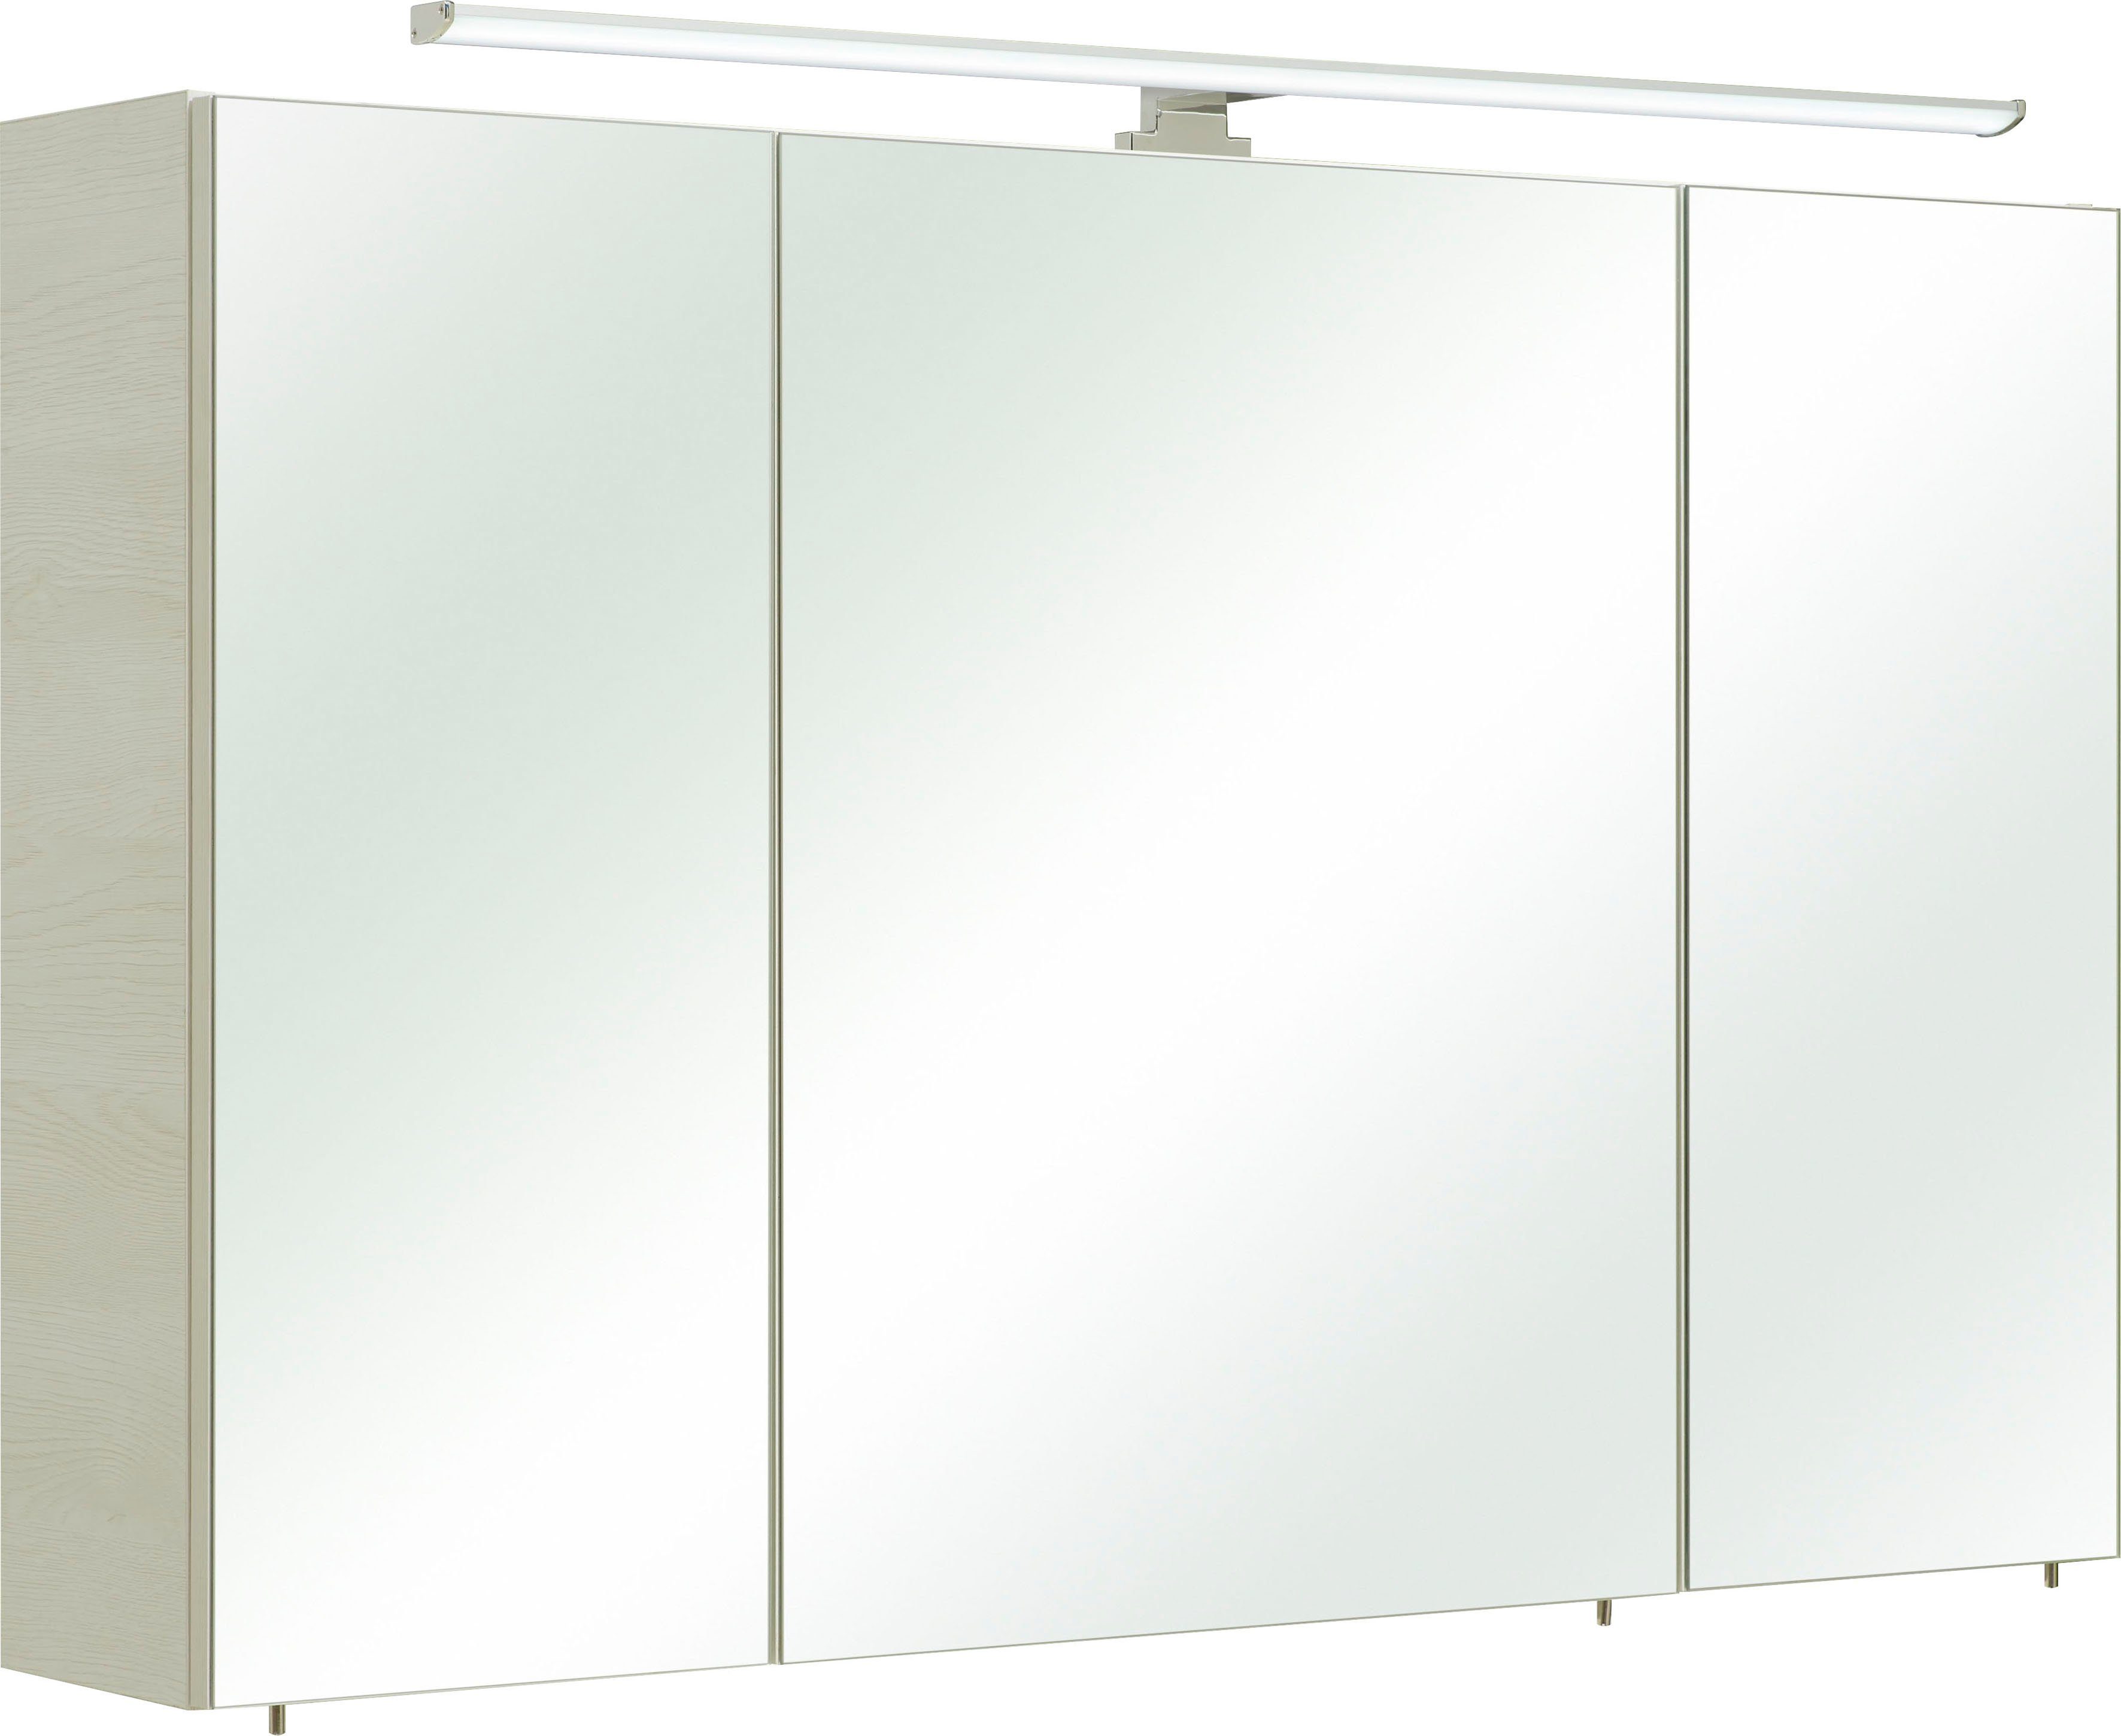 PELIPAL Spiegelkast Quickset 936 Breedte 110 cm, 3-deurs, ledverlichting, schakelaar-/stekkerdoos, deurdemper